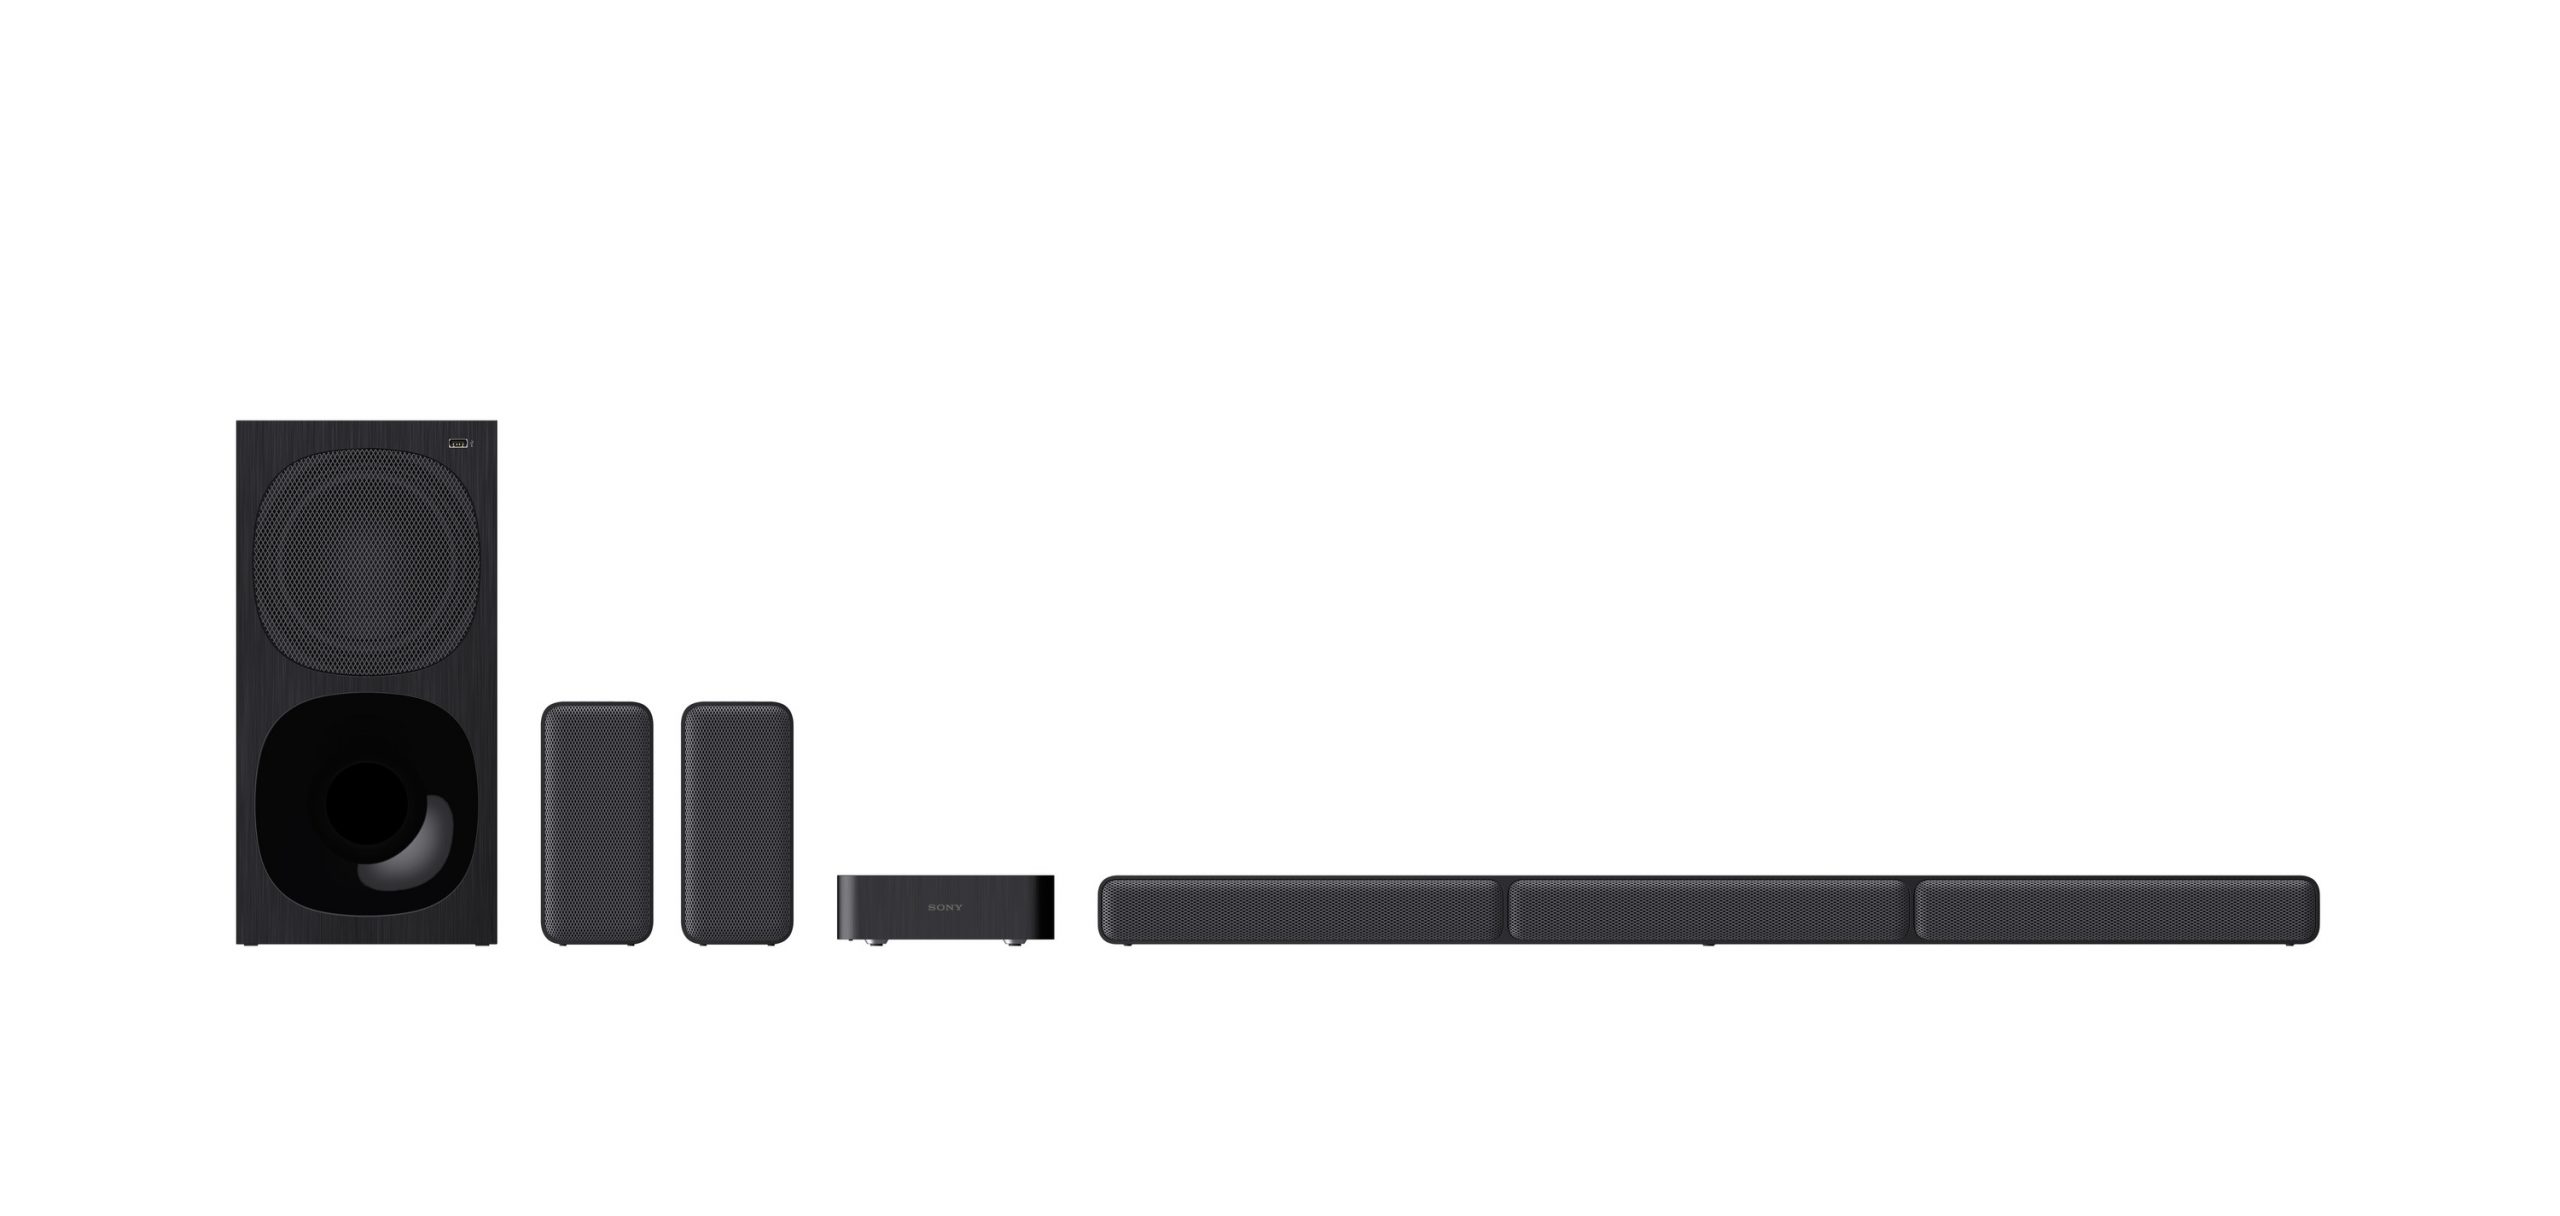 Sony ra mắt HT-S40R, soundbar 5.1 kênh kết hợp với loa vệ tinh không dây